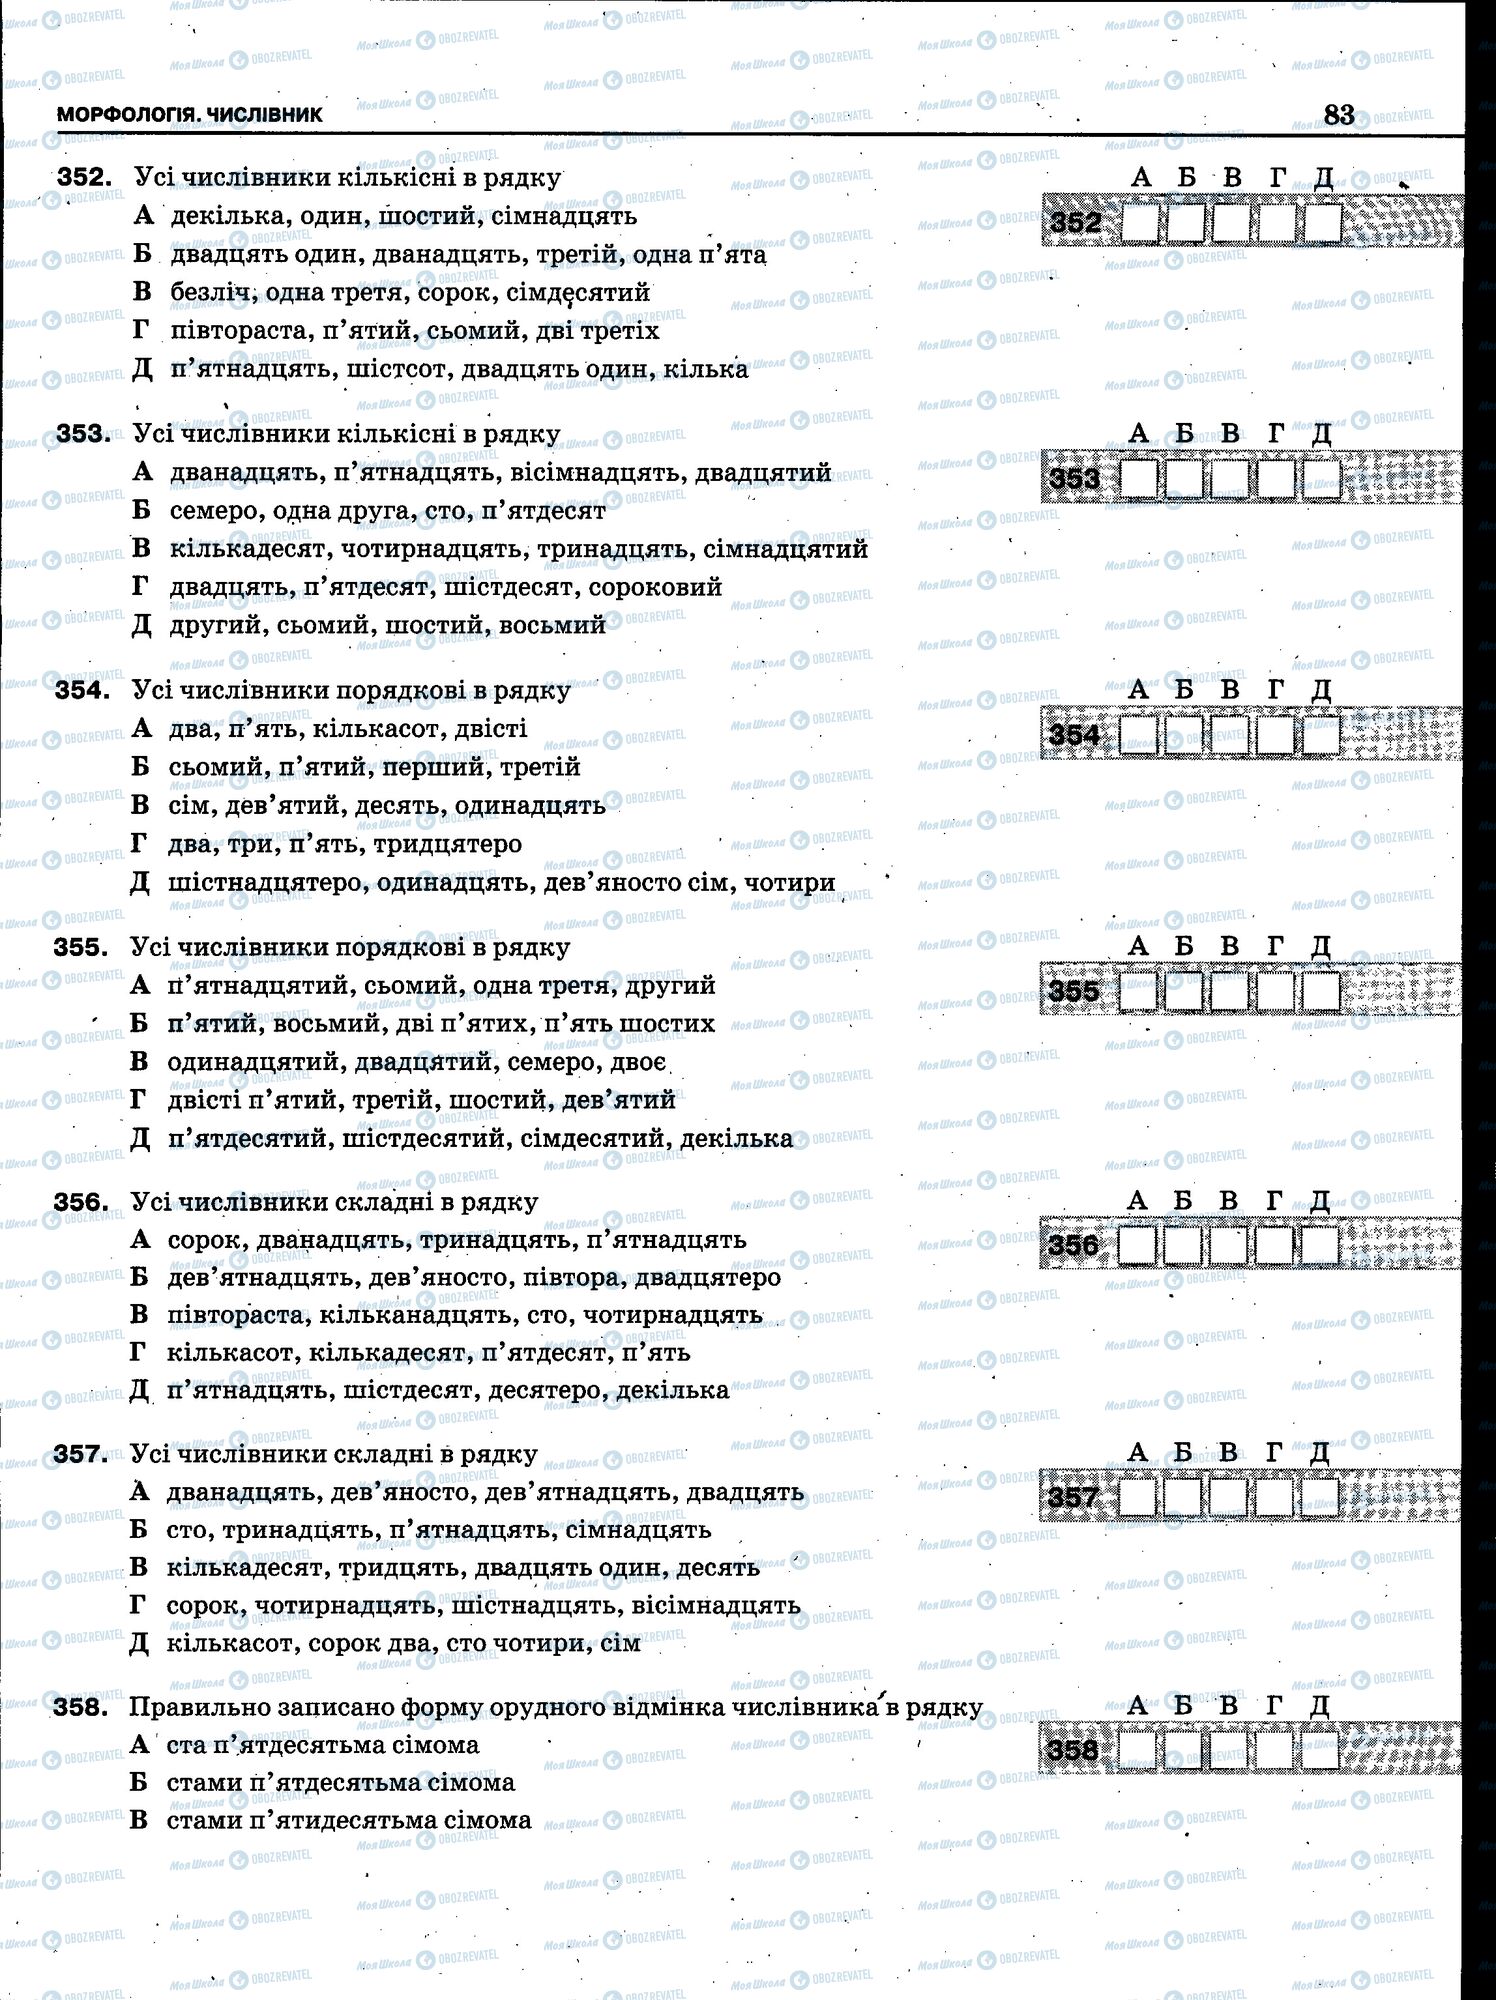 ЗНО Укр мова 11 класс страница 081